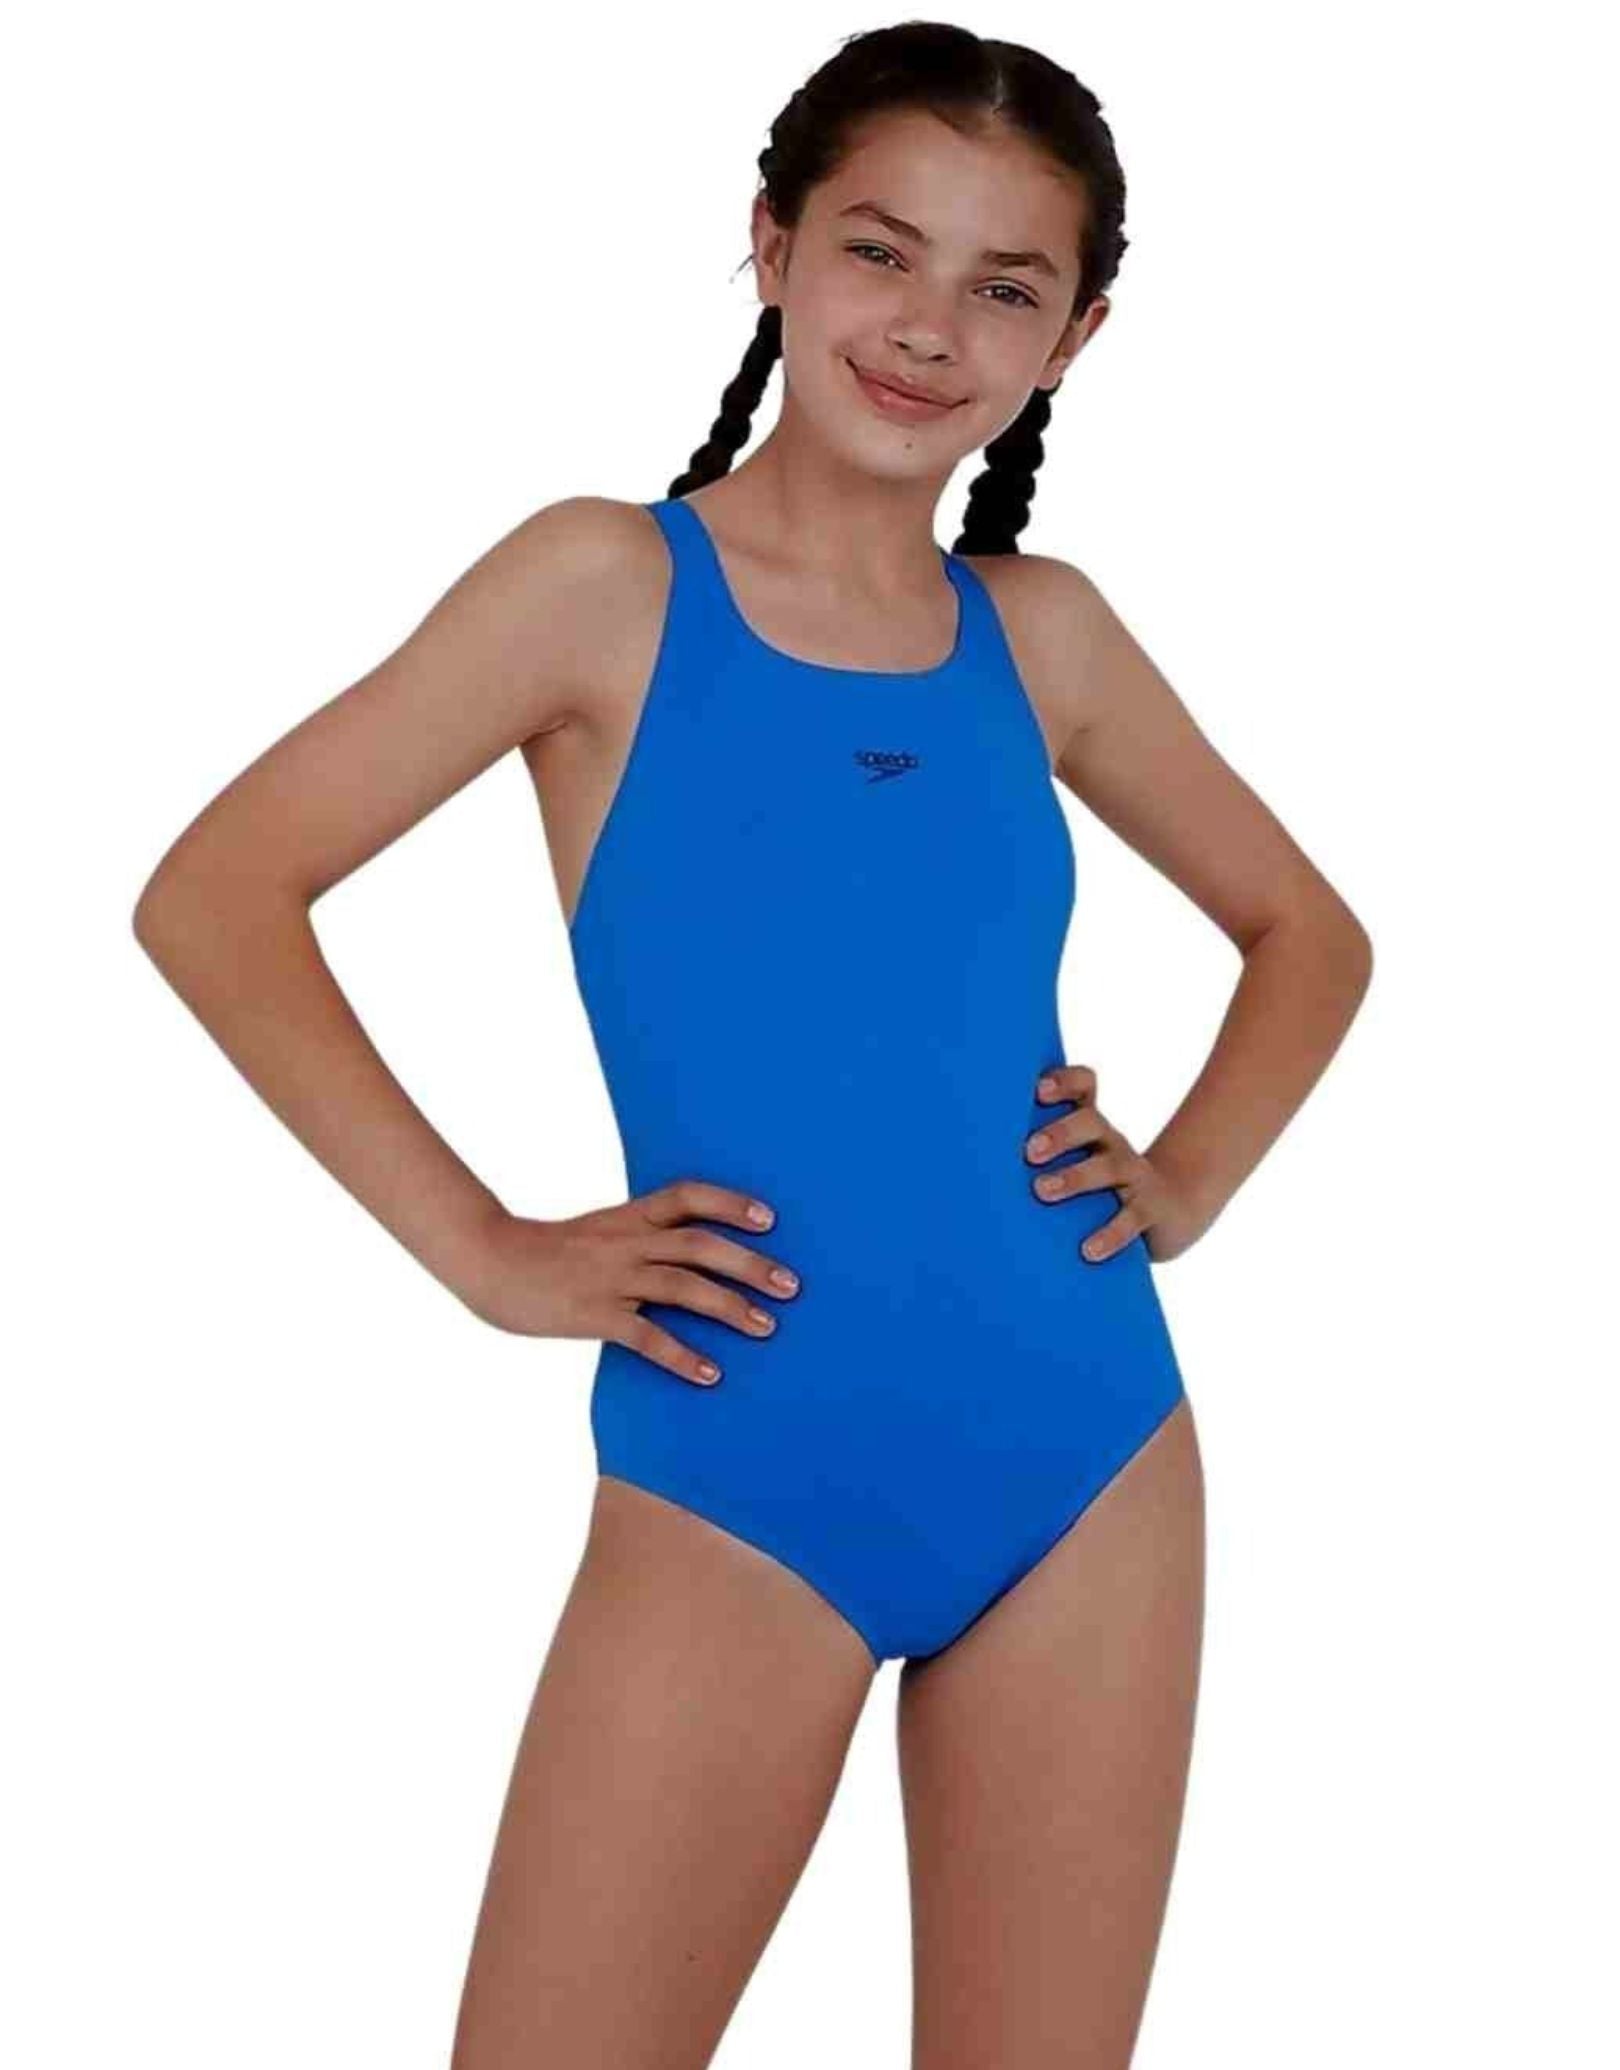 Girls Juniors Women Racing Training Bathing Swimsuit Swimwear Size